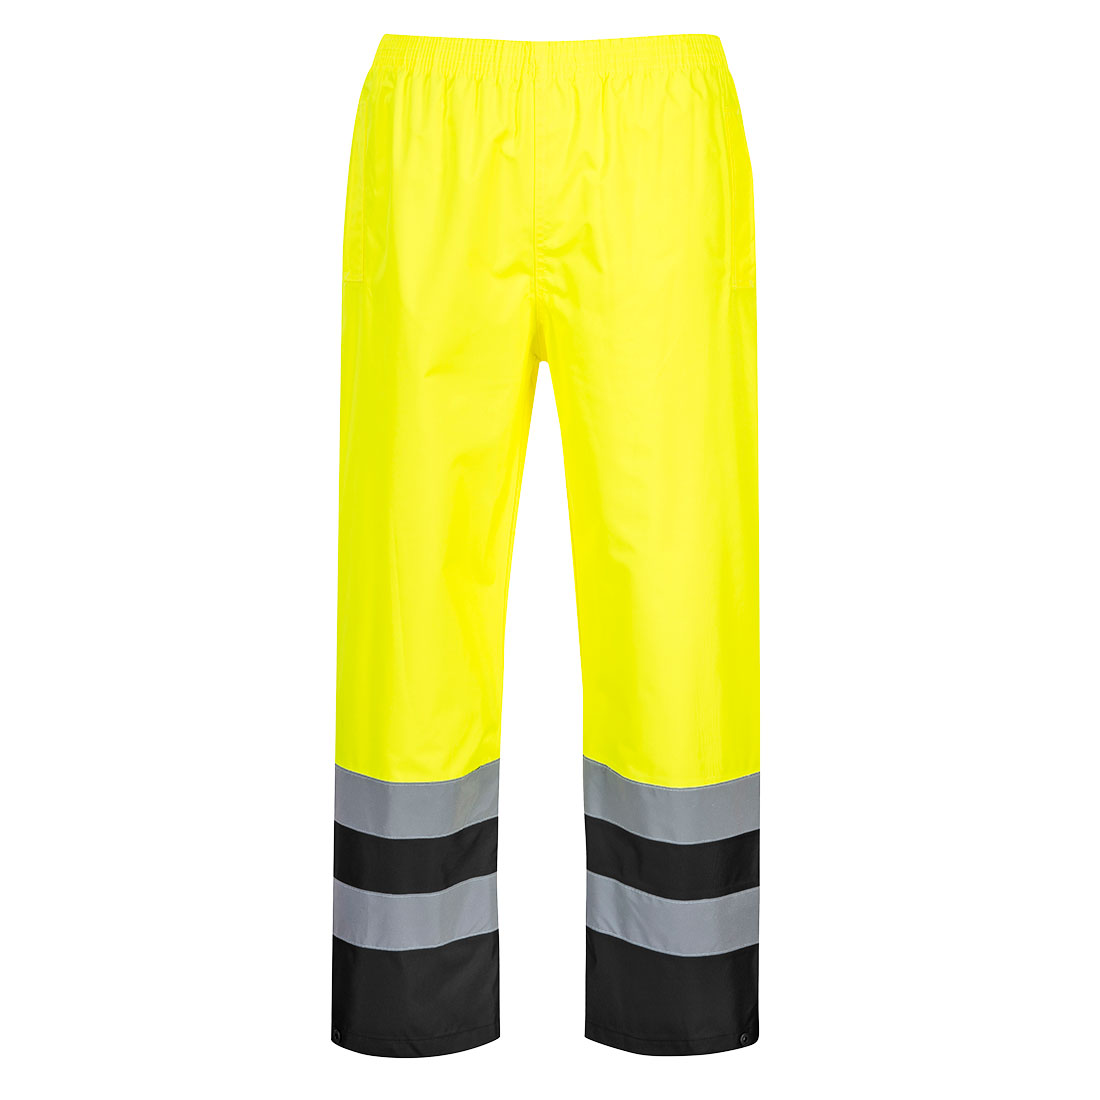 S486 - Dvoubarevné kalhoty Hi-Vis Traffic Velikost: S, Barva: žlutá/černá